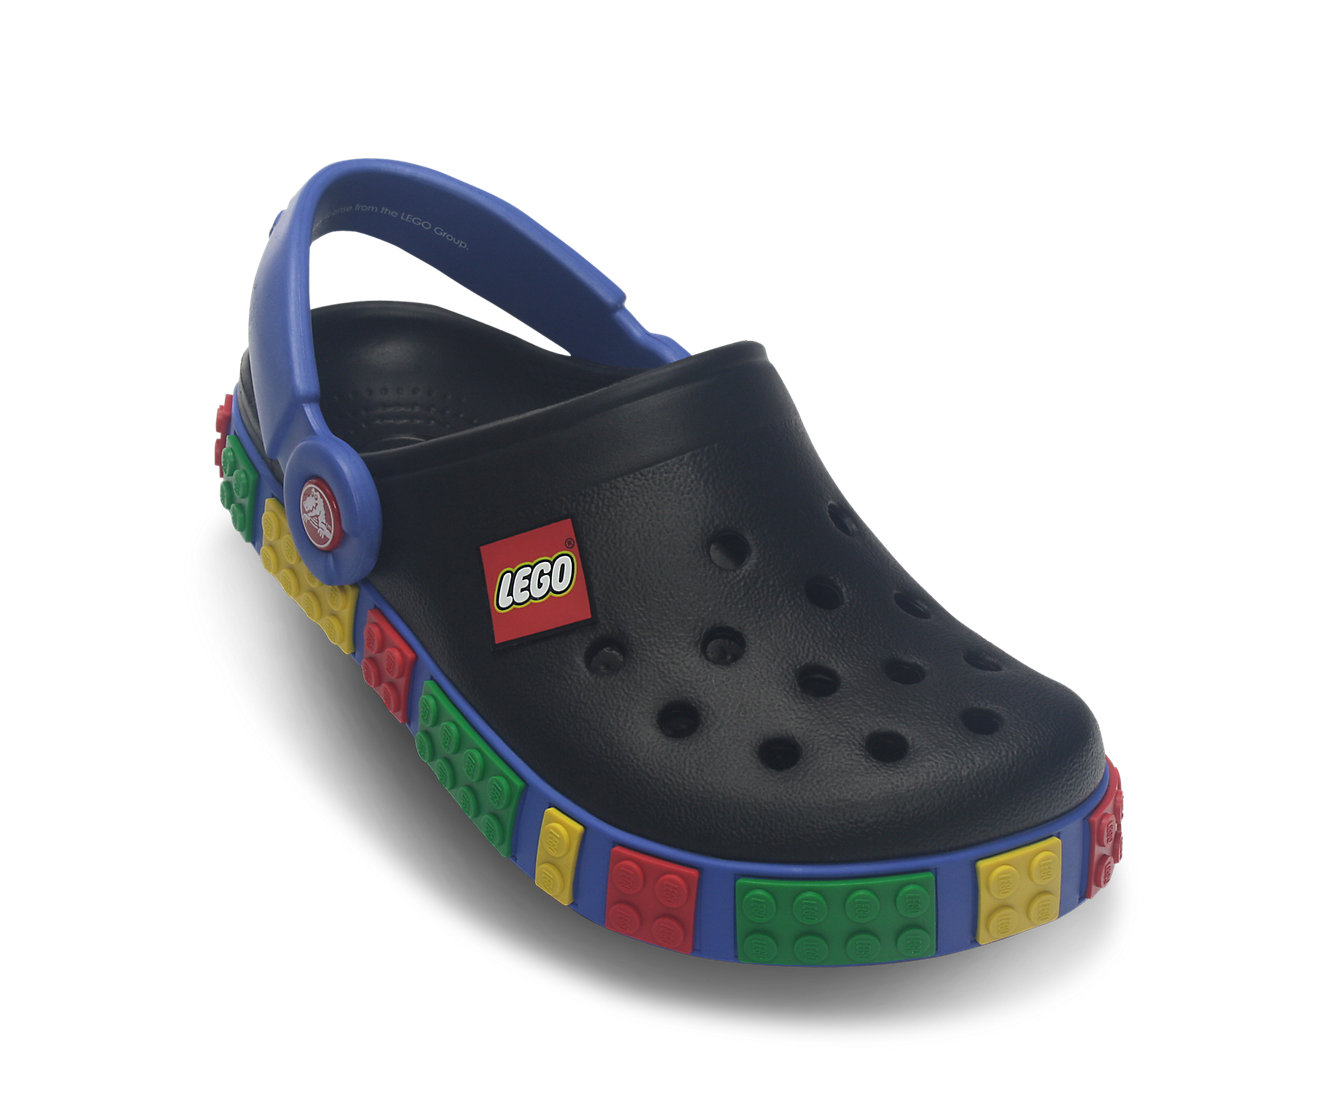 Crocs - Crocband Kids Lego Unisex-Child Shoe